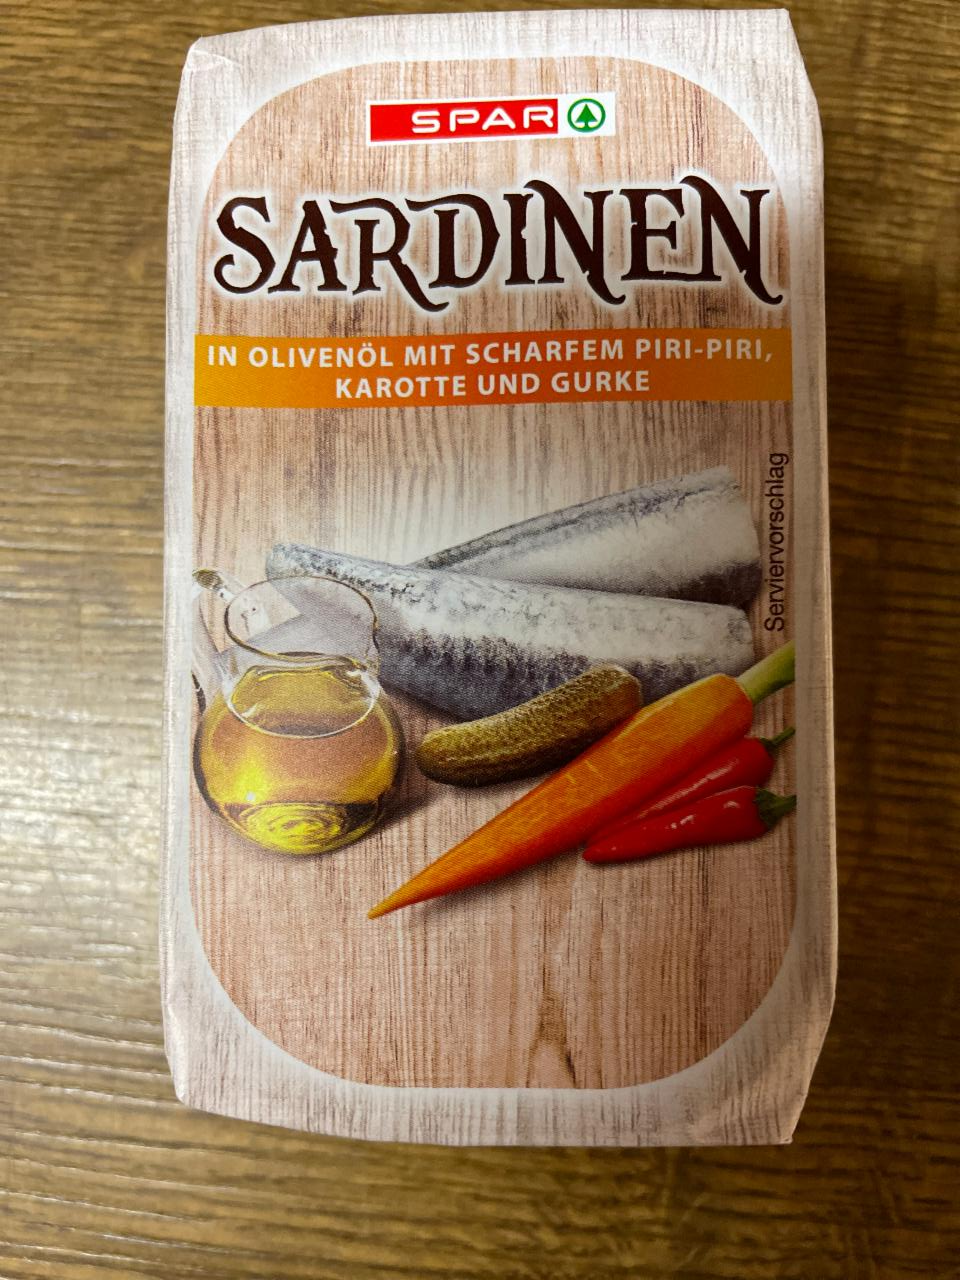 Fotografie - spar sardinen in olivenöl mit scharfem piri-piri, karotte und gurke